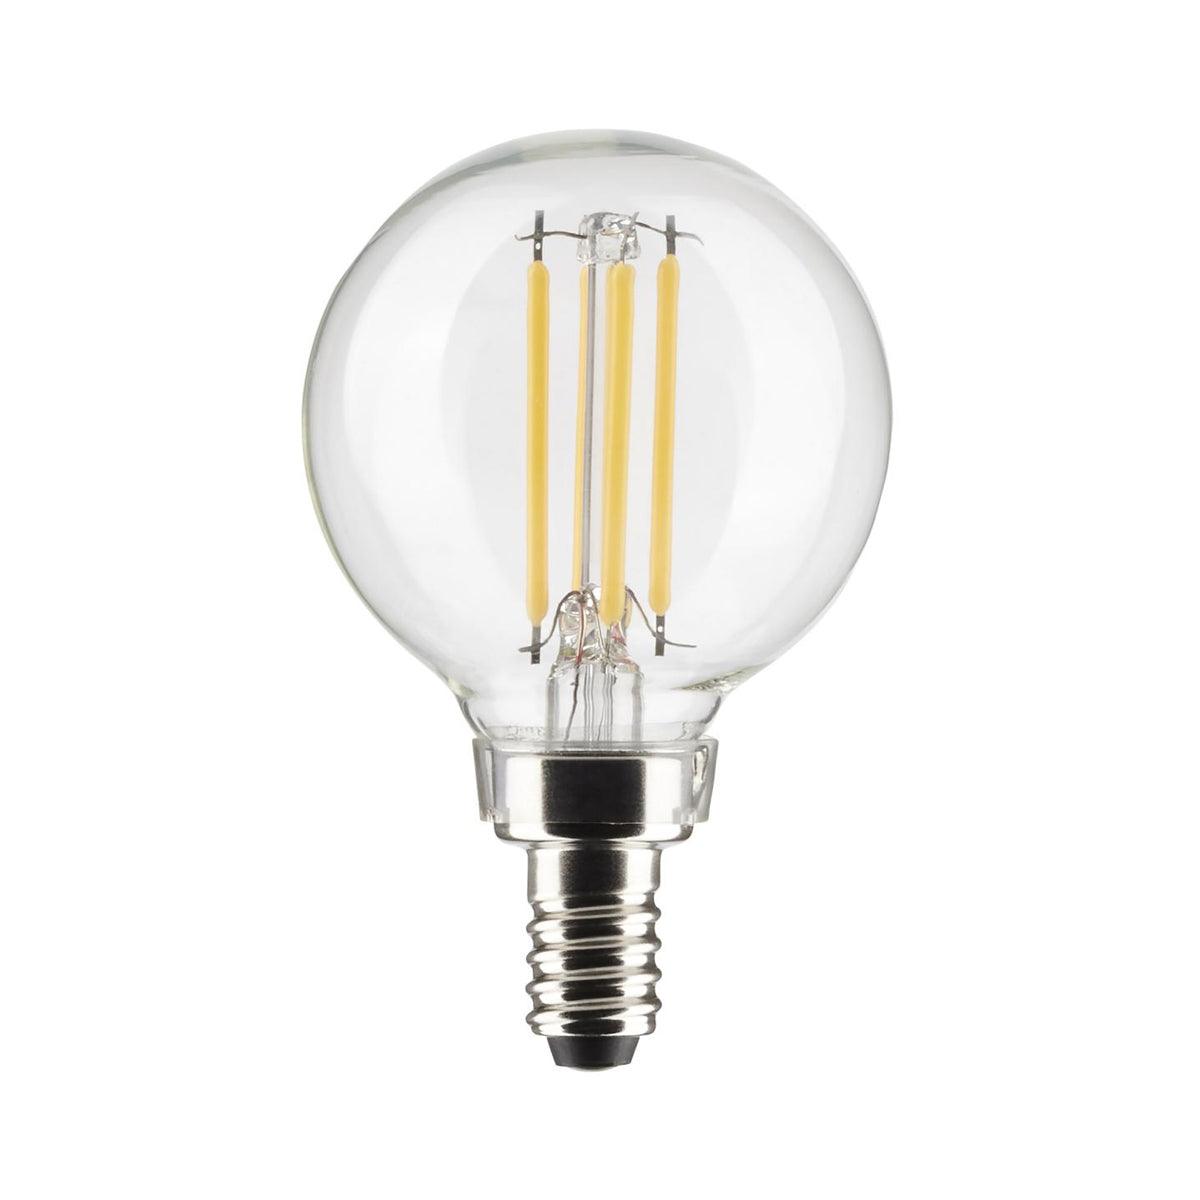 G16.5 LED Globe Bulb, 6 Watt, 500 Lumens, 2700K, E12 Candelabra Base, Clear Finish, Pack Of 2